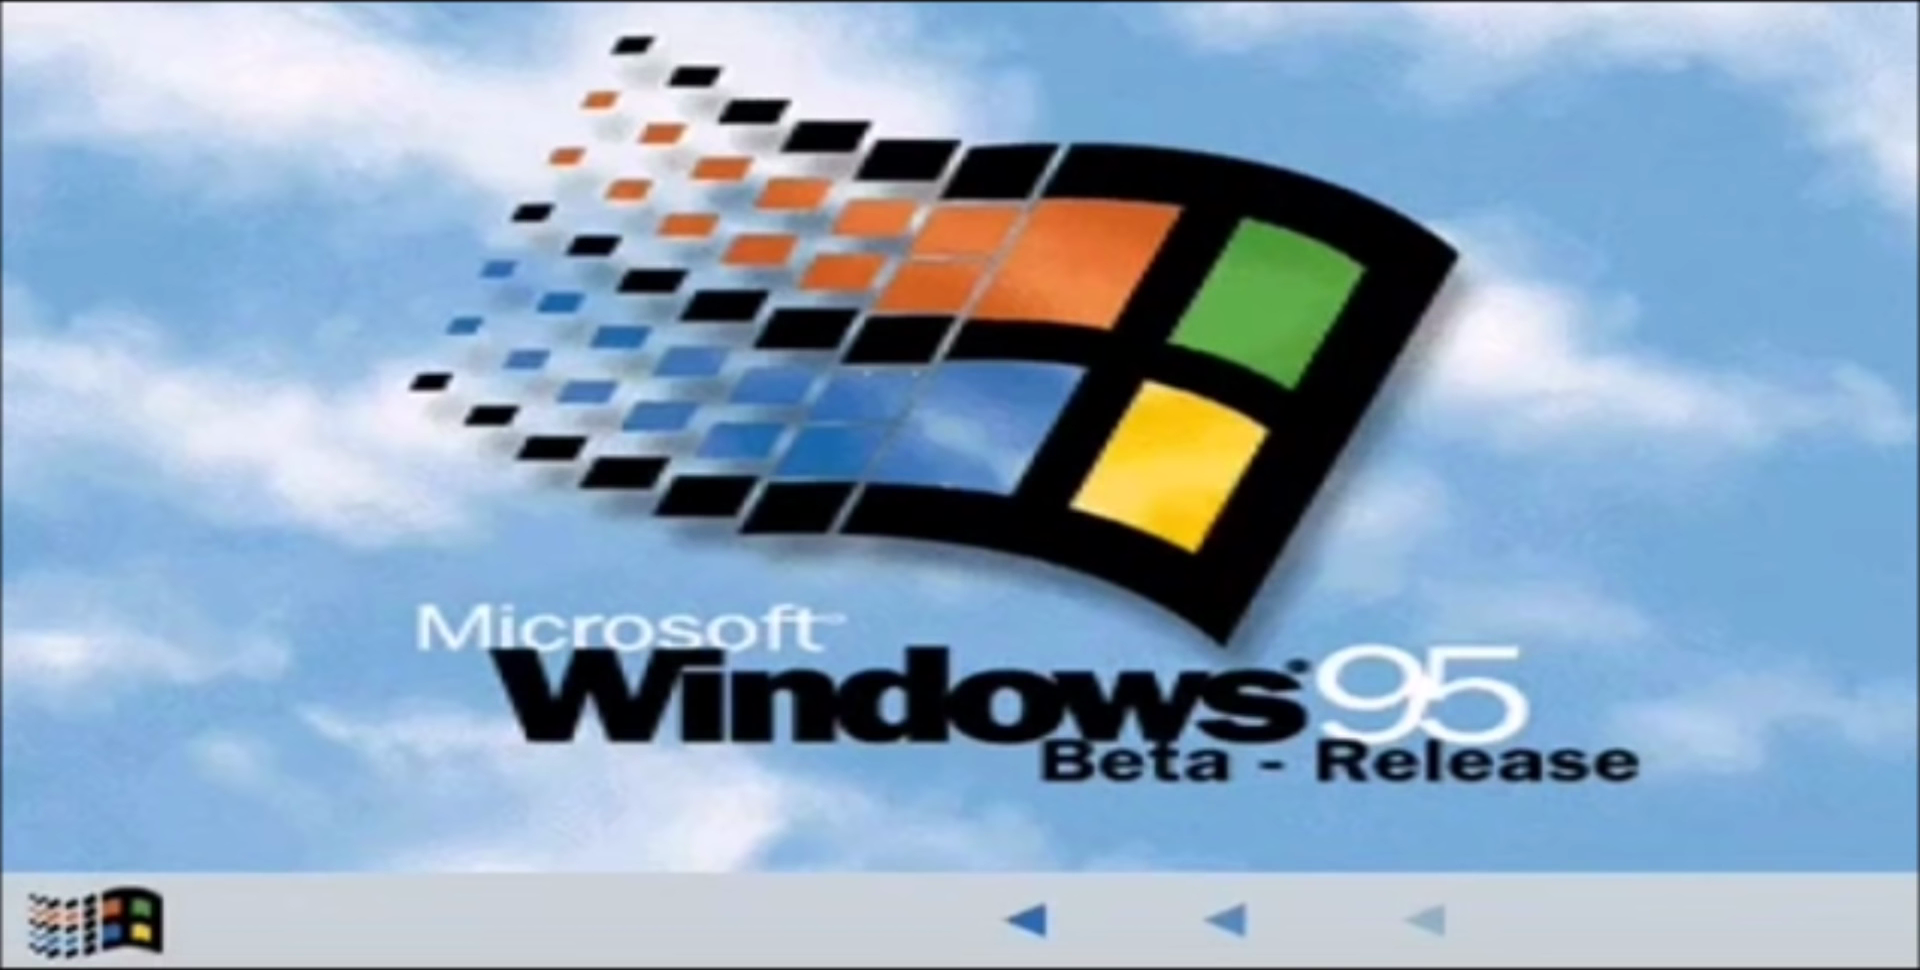 Windows 95 (Beta - Release) splash screen